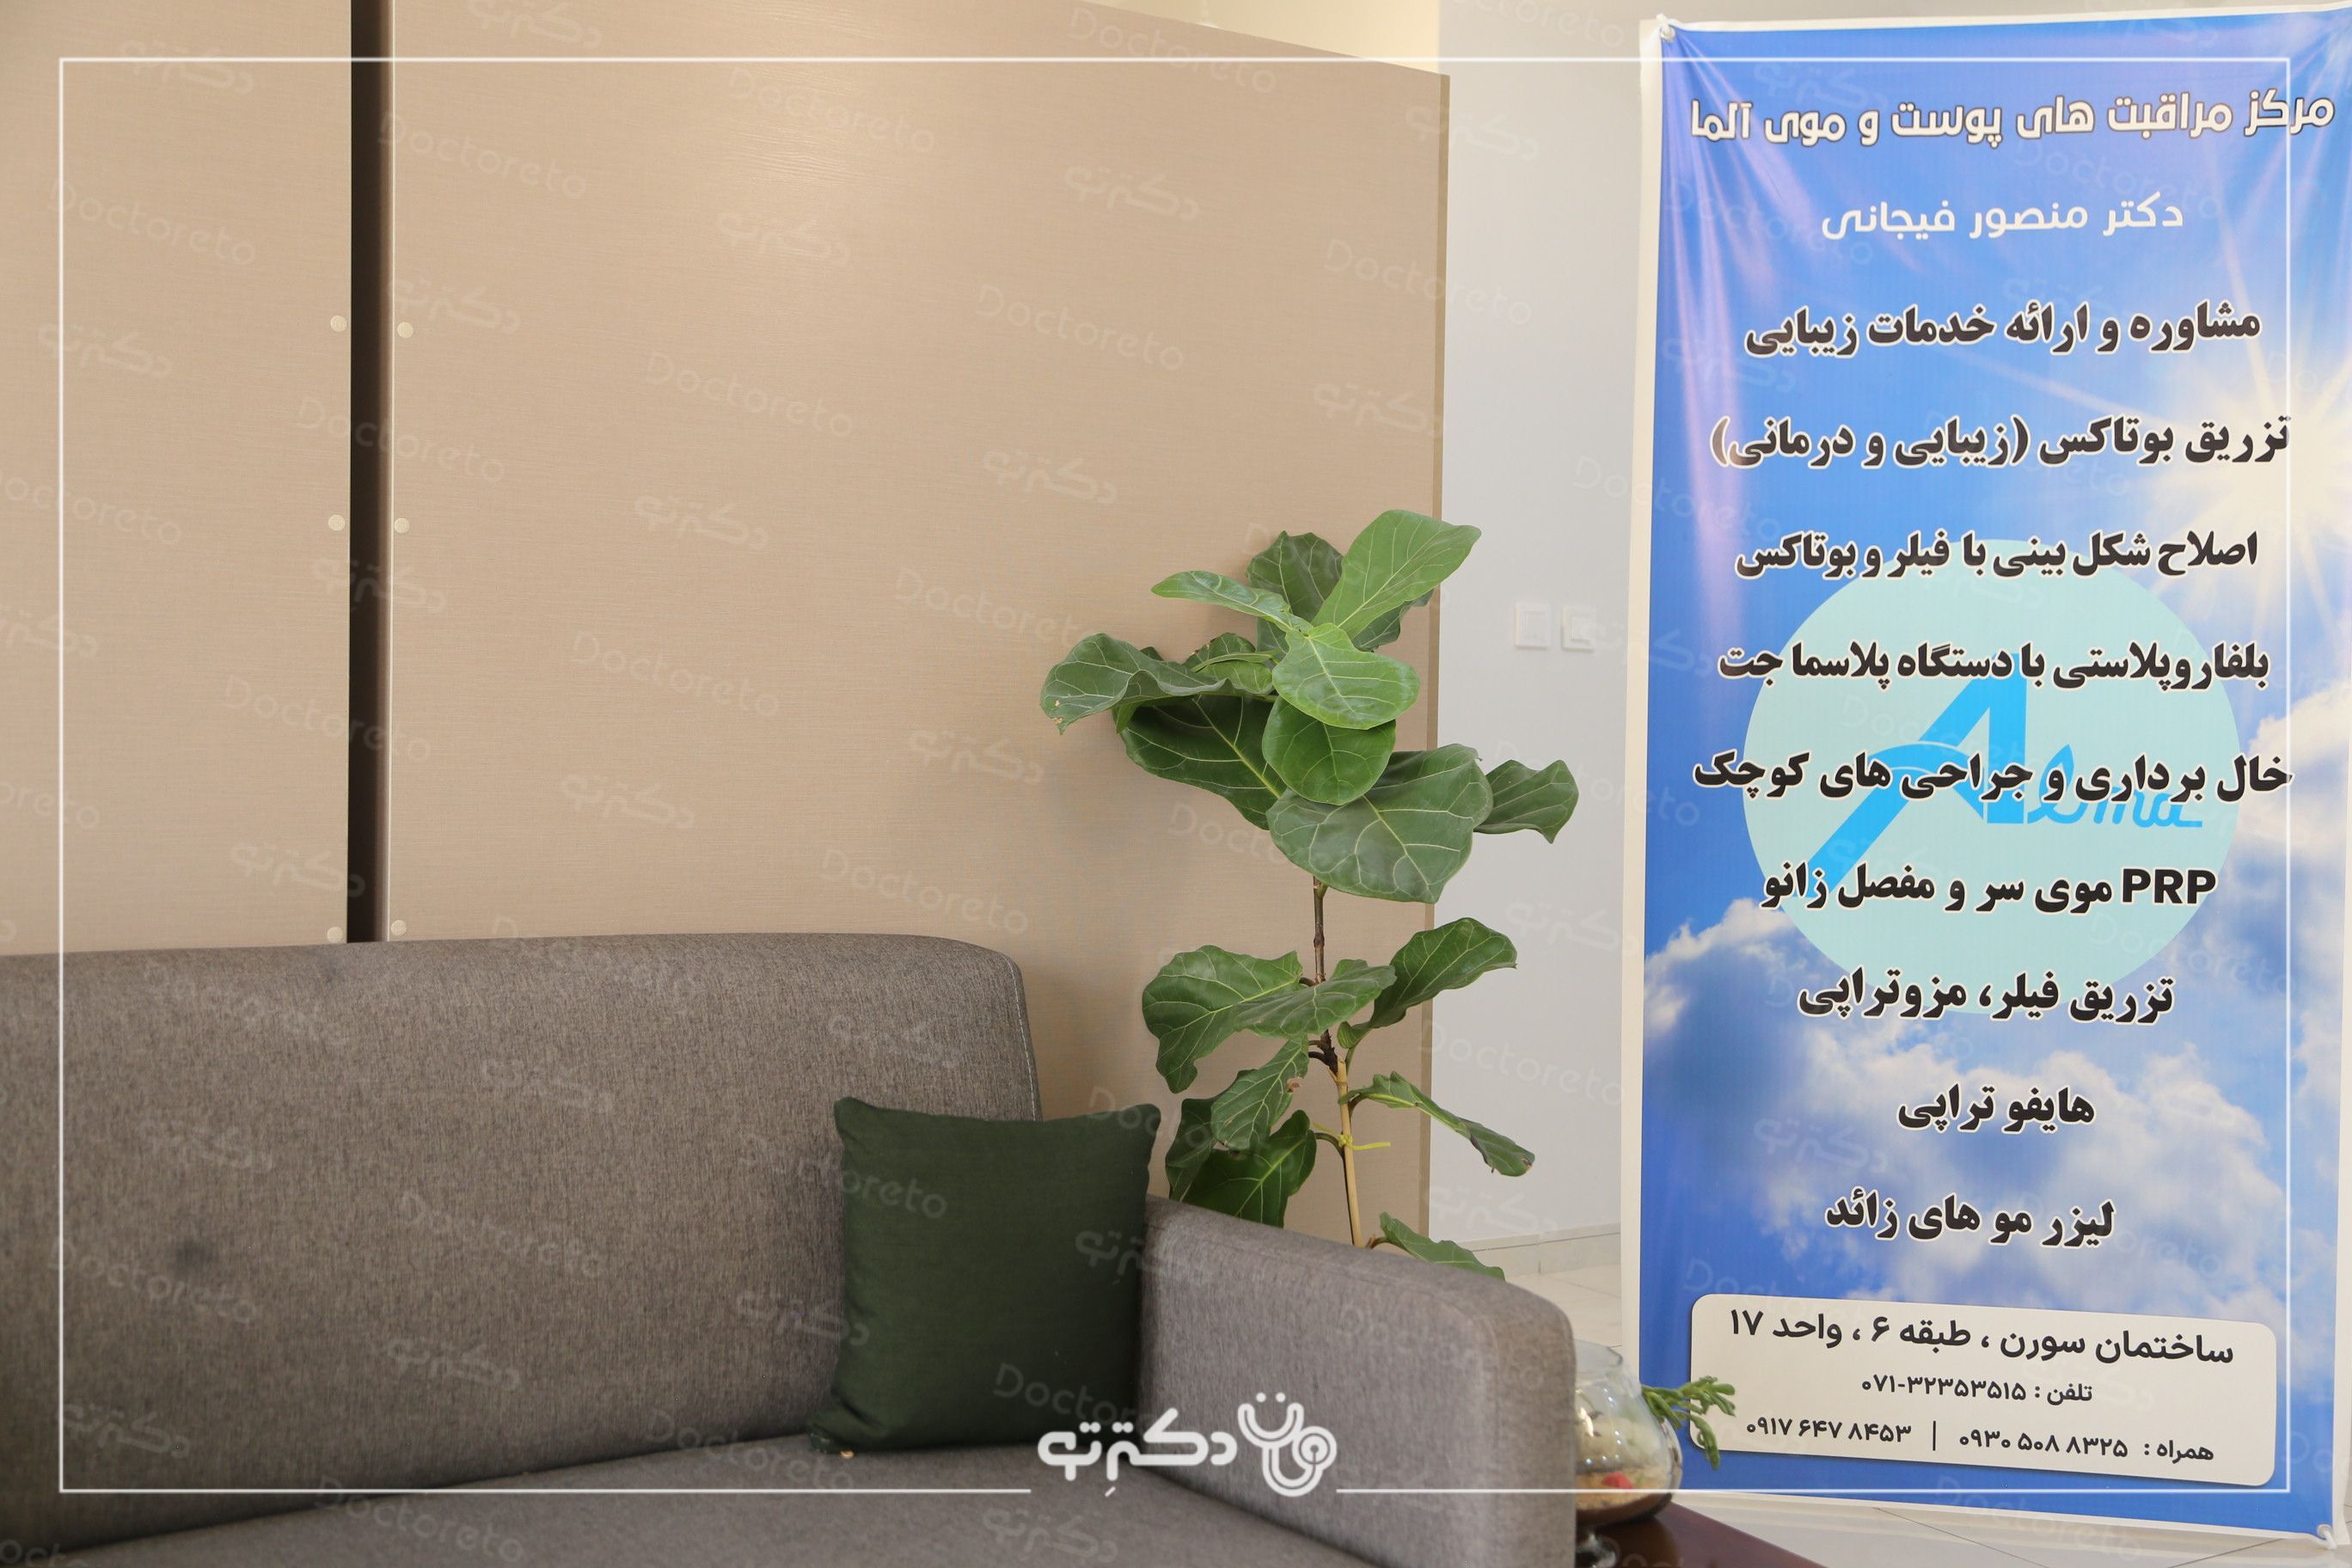 لیفت دور چشم با دستگاه پلاسما( هر چشم) دکتر منصور فیجانی در شیراز 5